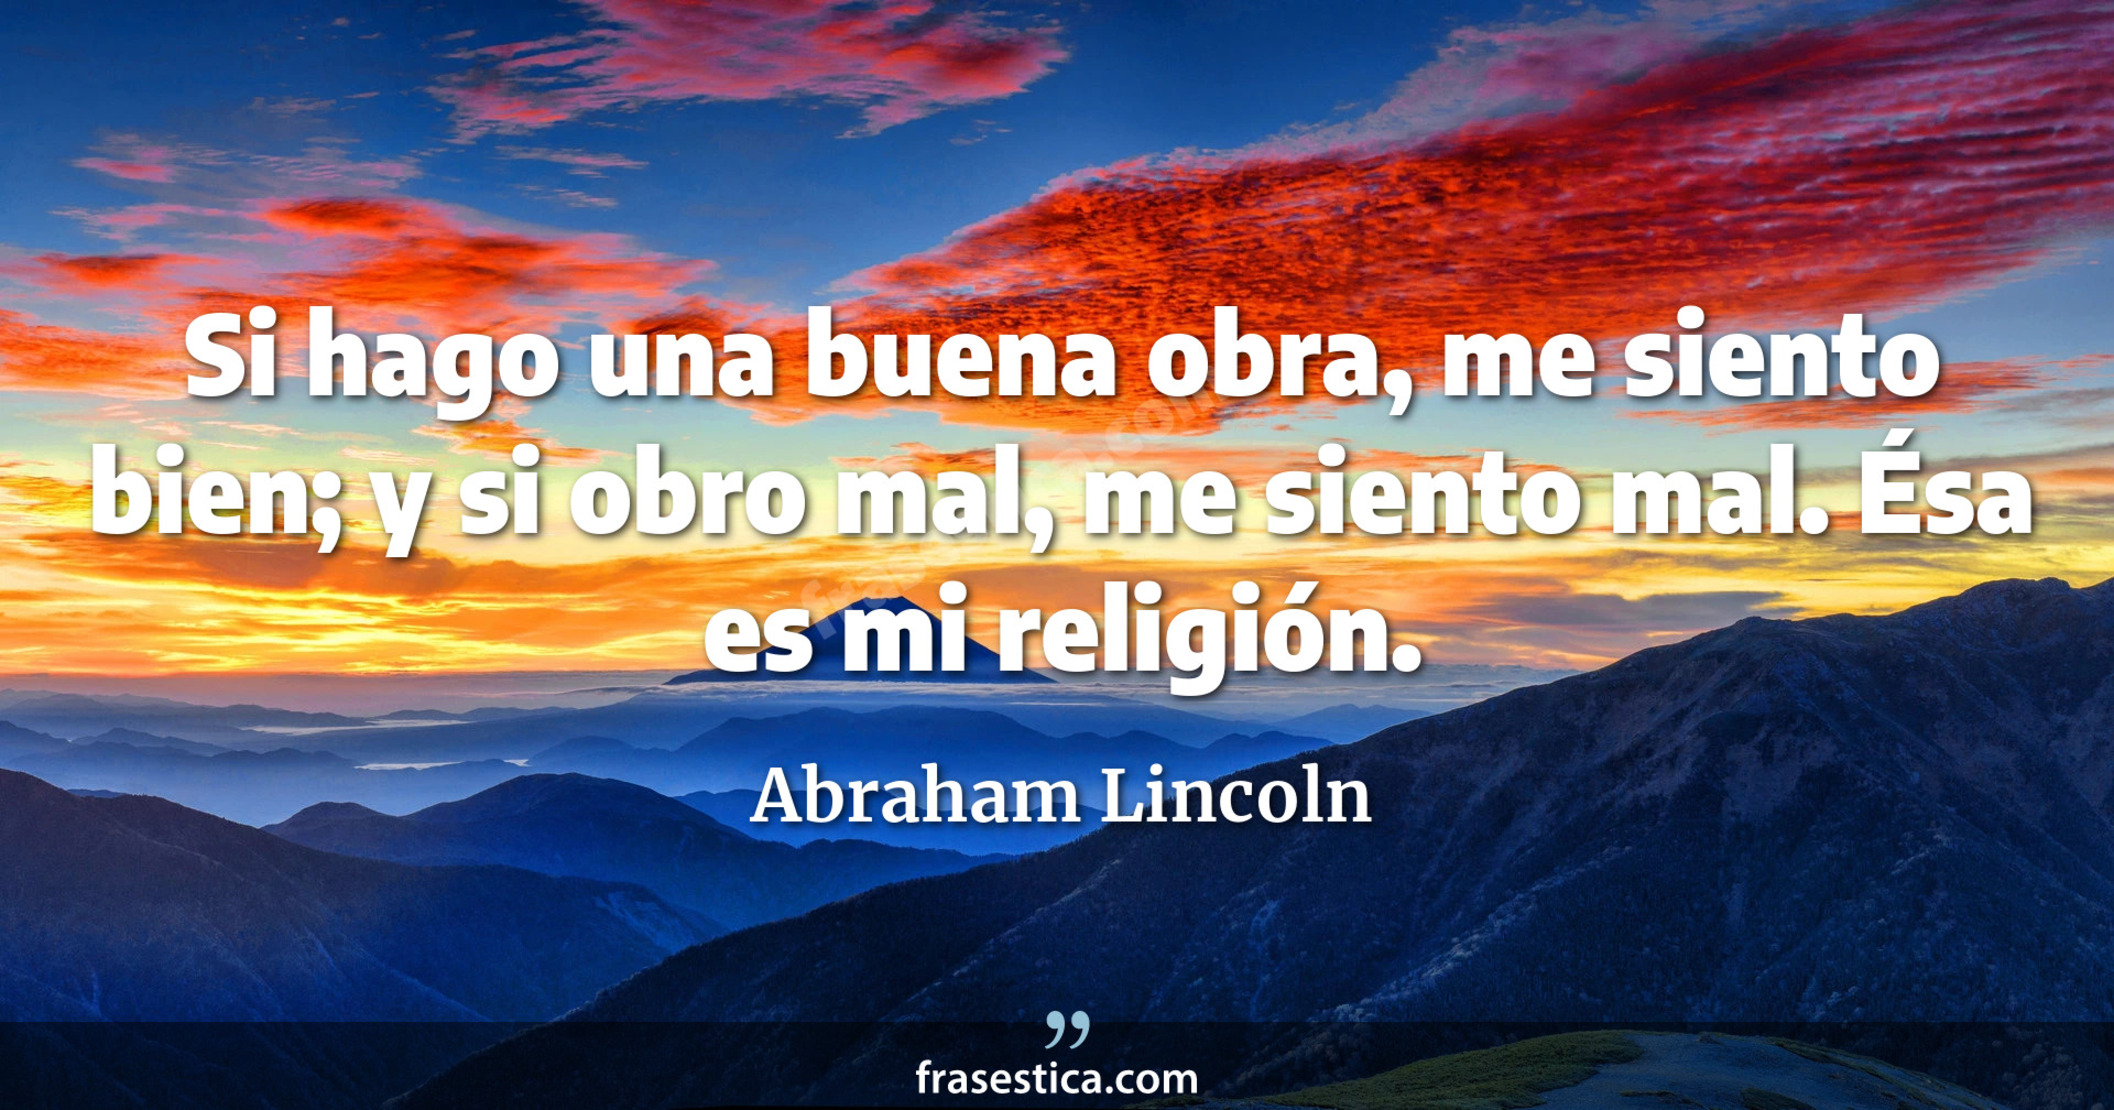 Si hago una buena obra, me siento bien; y si obro mal, me siento mal. Ésa es mi religión. - Abraham Lincoln